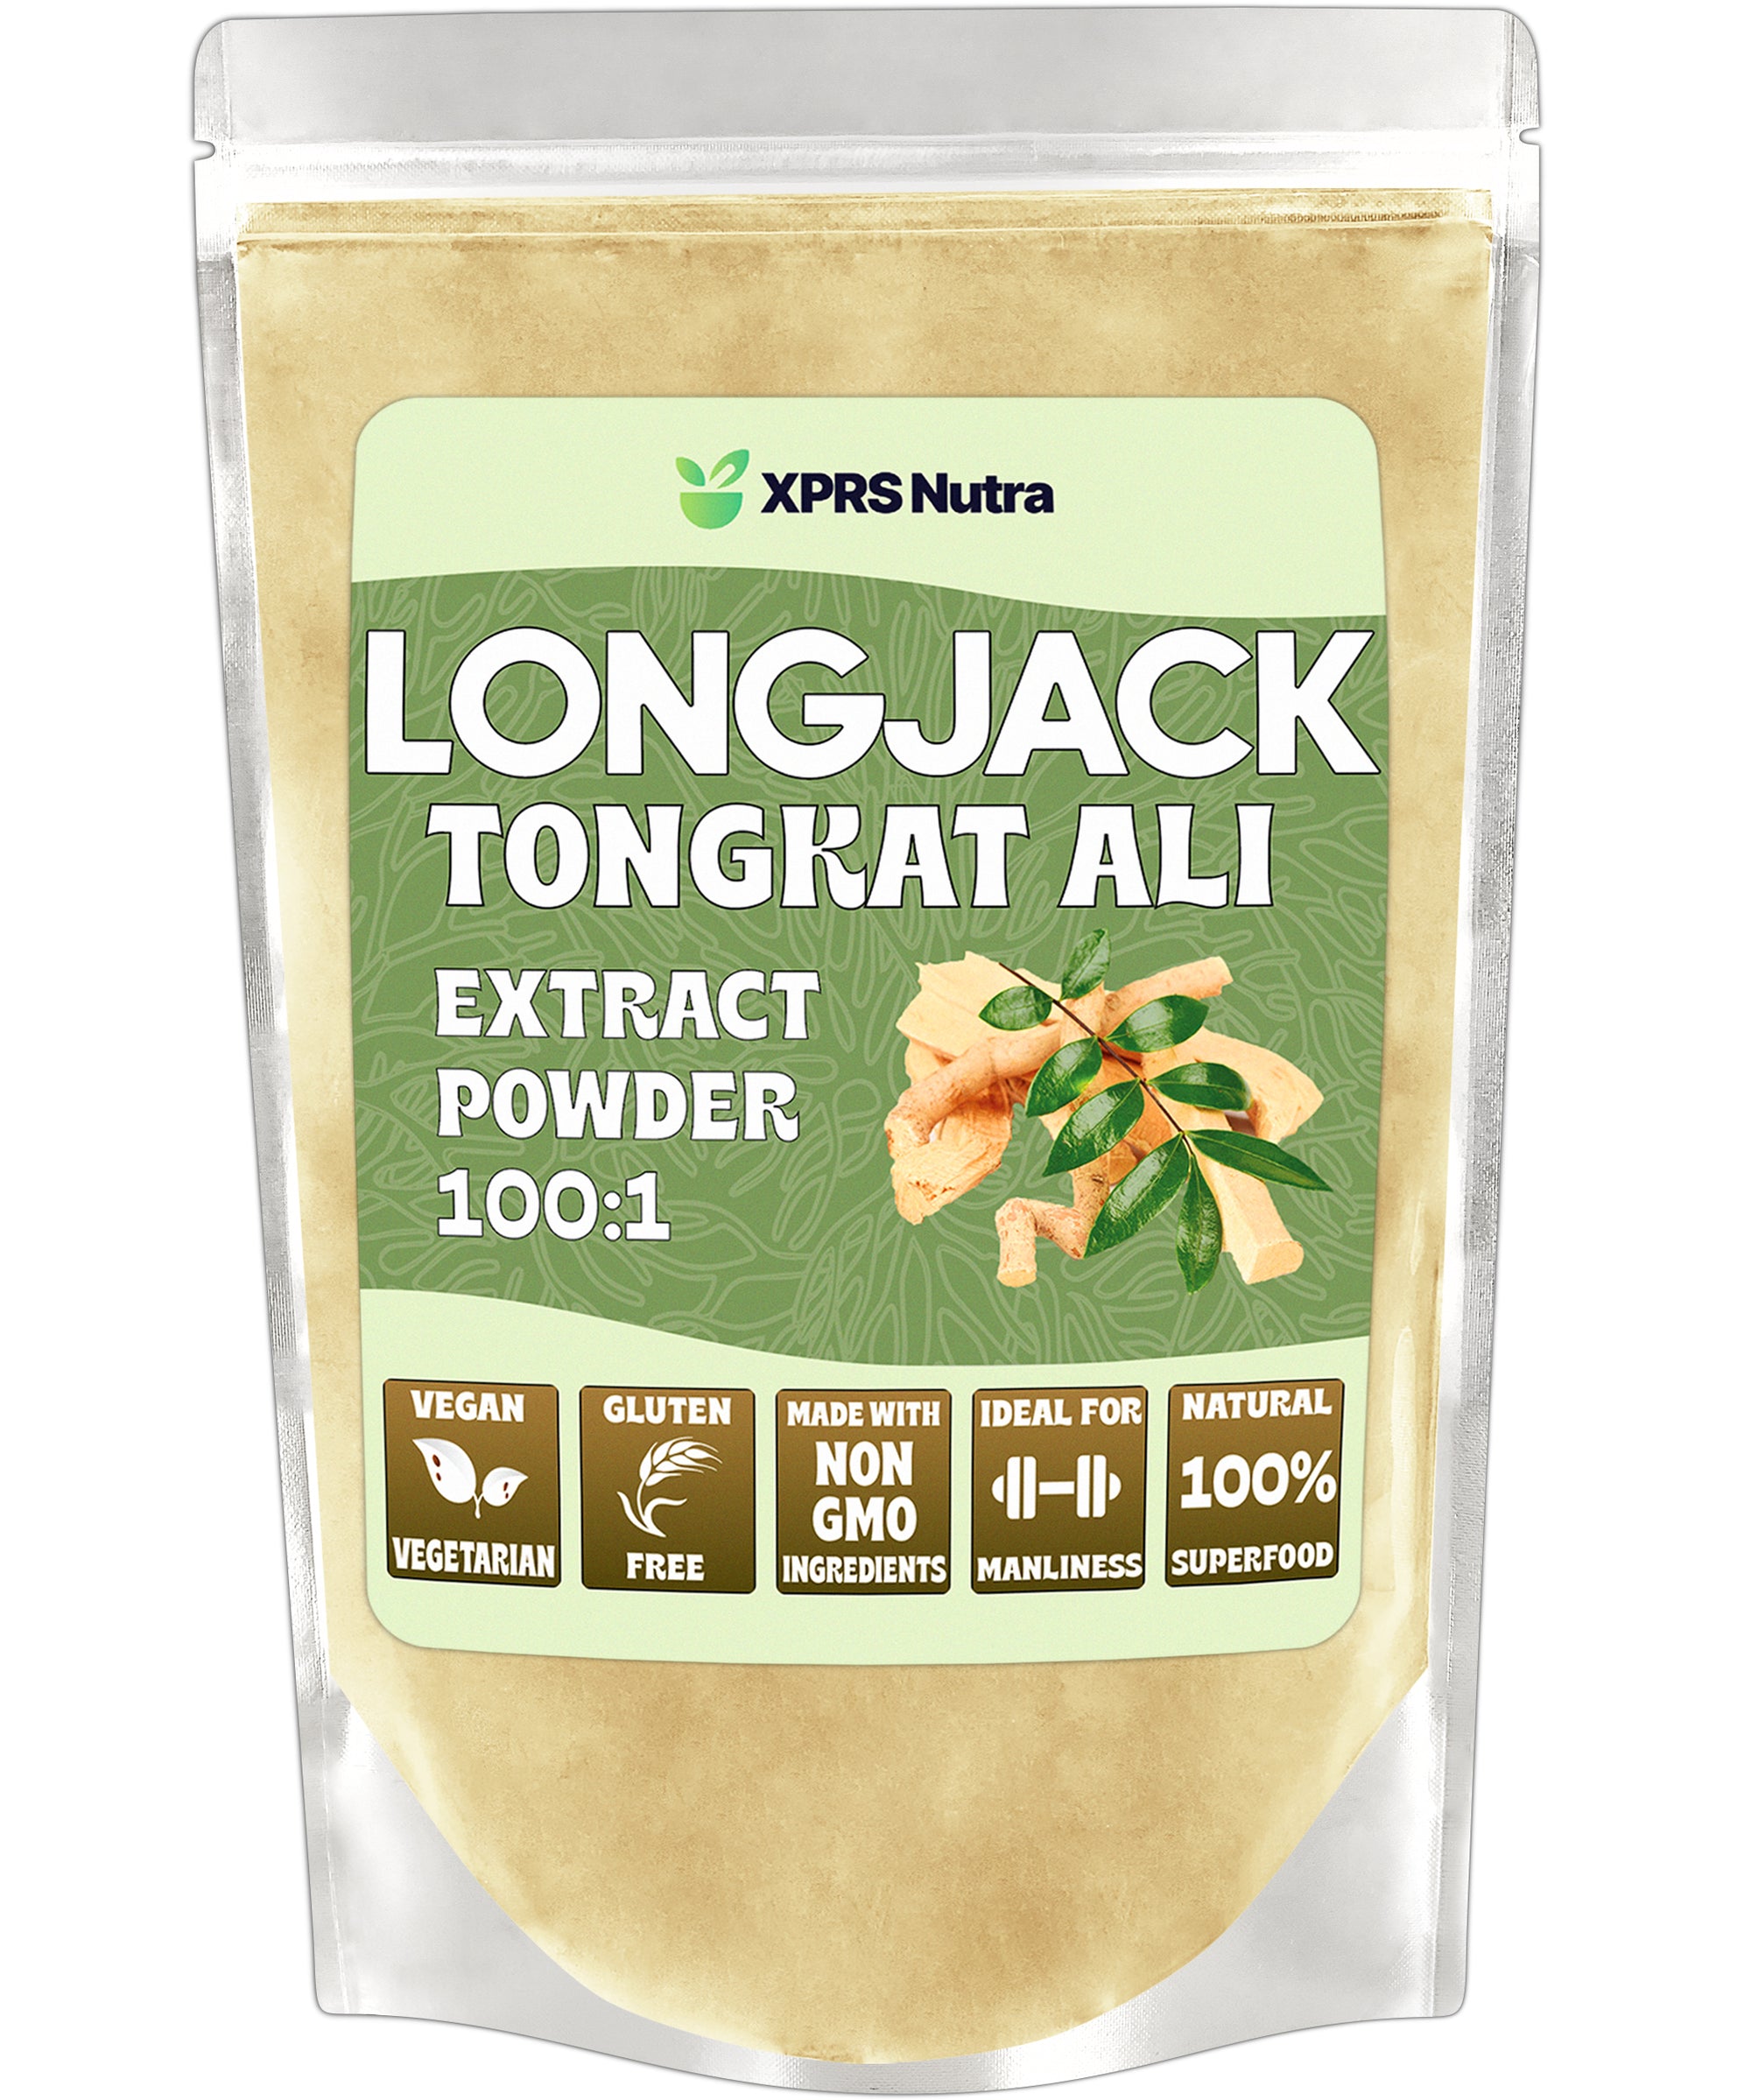 Longjack Tongkat Ali Powder Extract 100:1